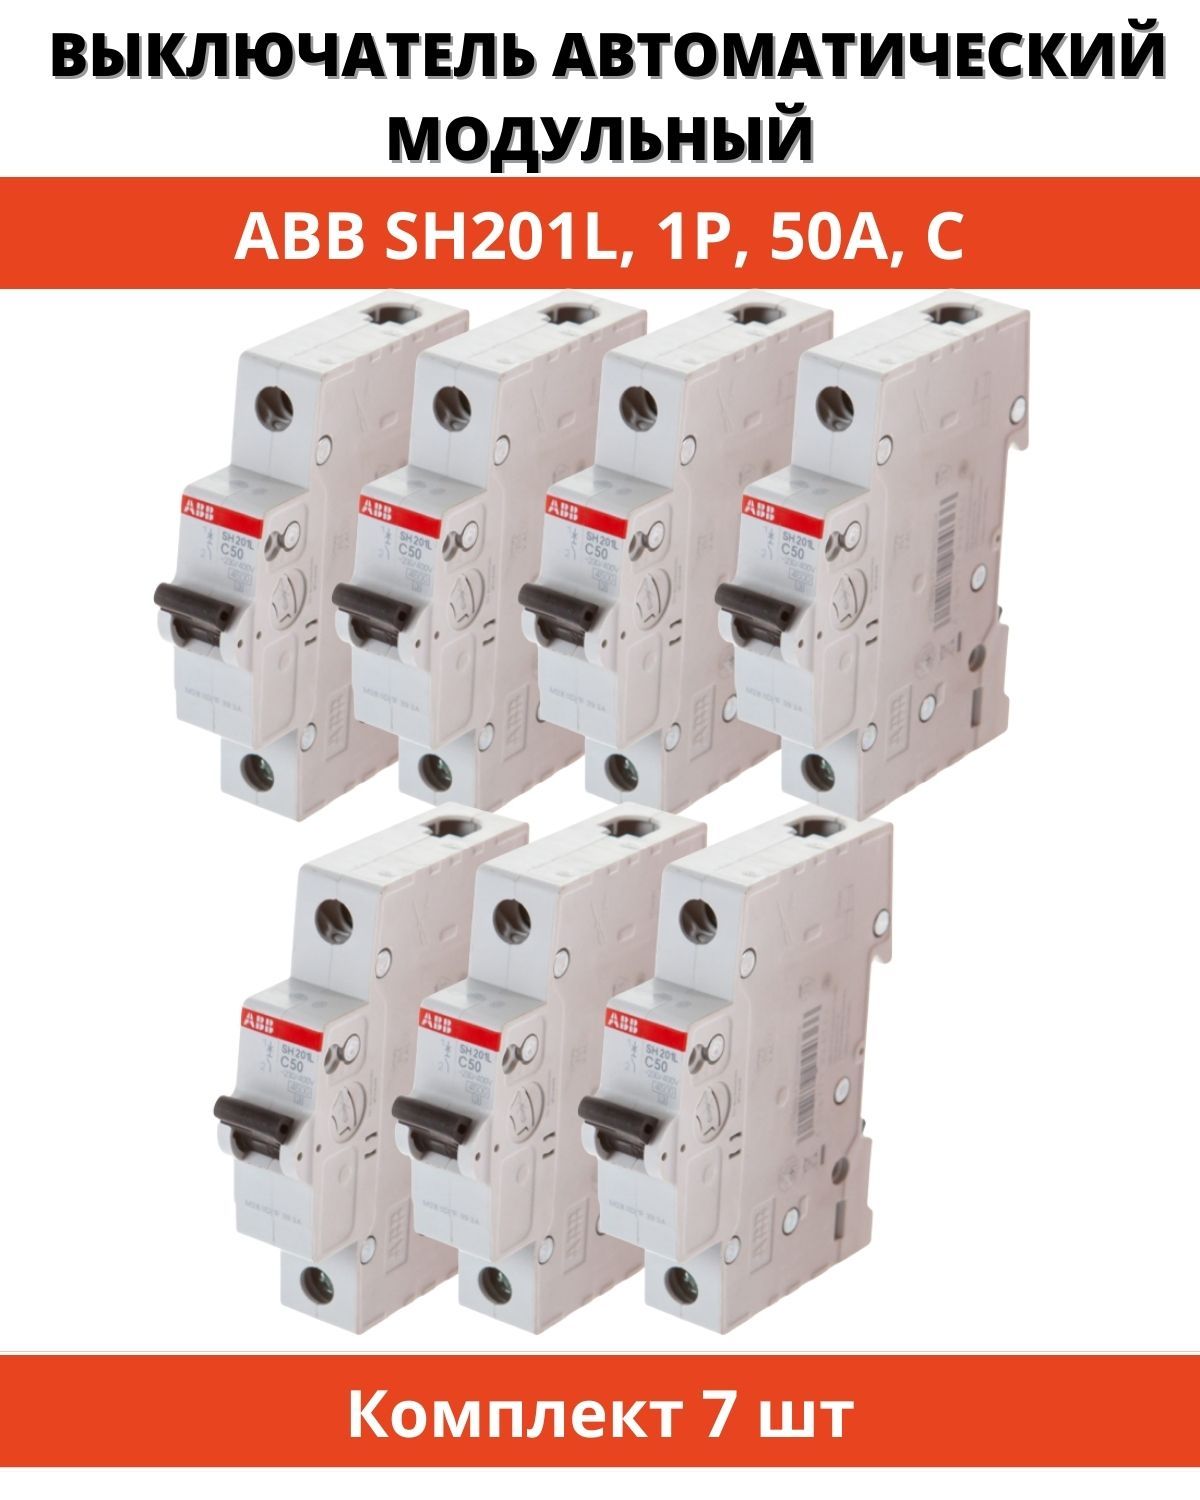 Автоматический выключатель ABB sh201l. АВВ sh201l c10. Автоматический выключатель ABB sh201l c10. Автомат ABB ms116. Купить автоматические выключатели abb